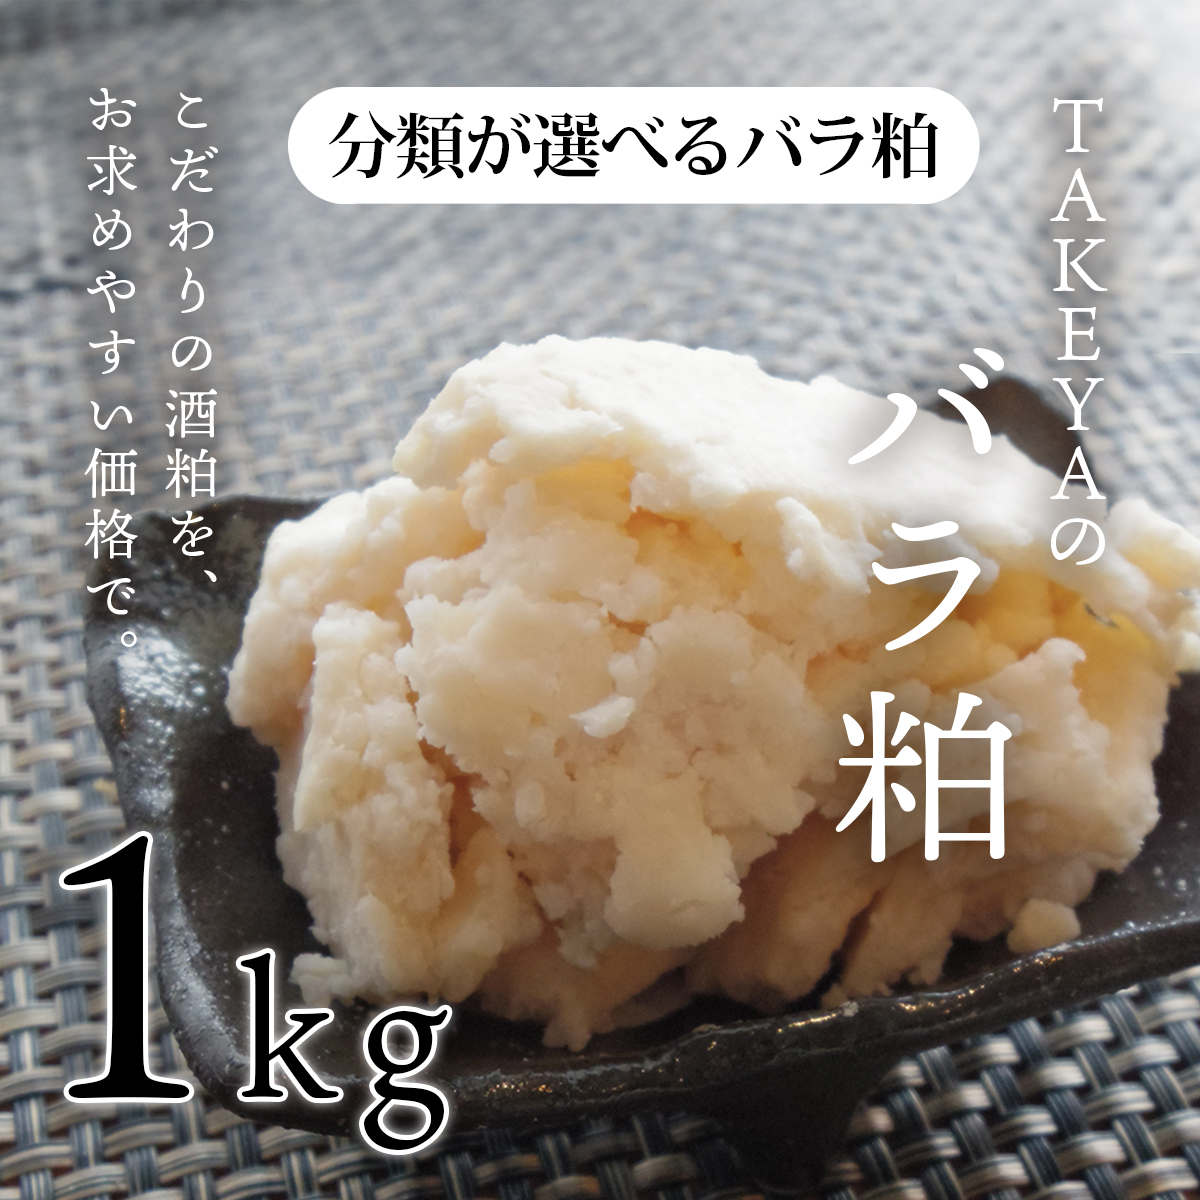 TAKEYAの分類が選べるバラ粕 (極上純米大吟醸から純米まで) 1kg